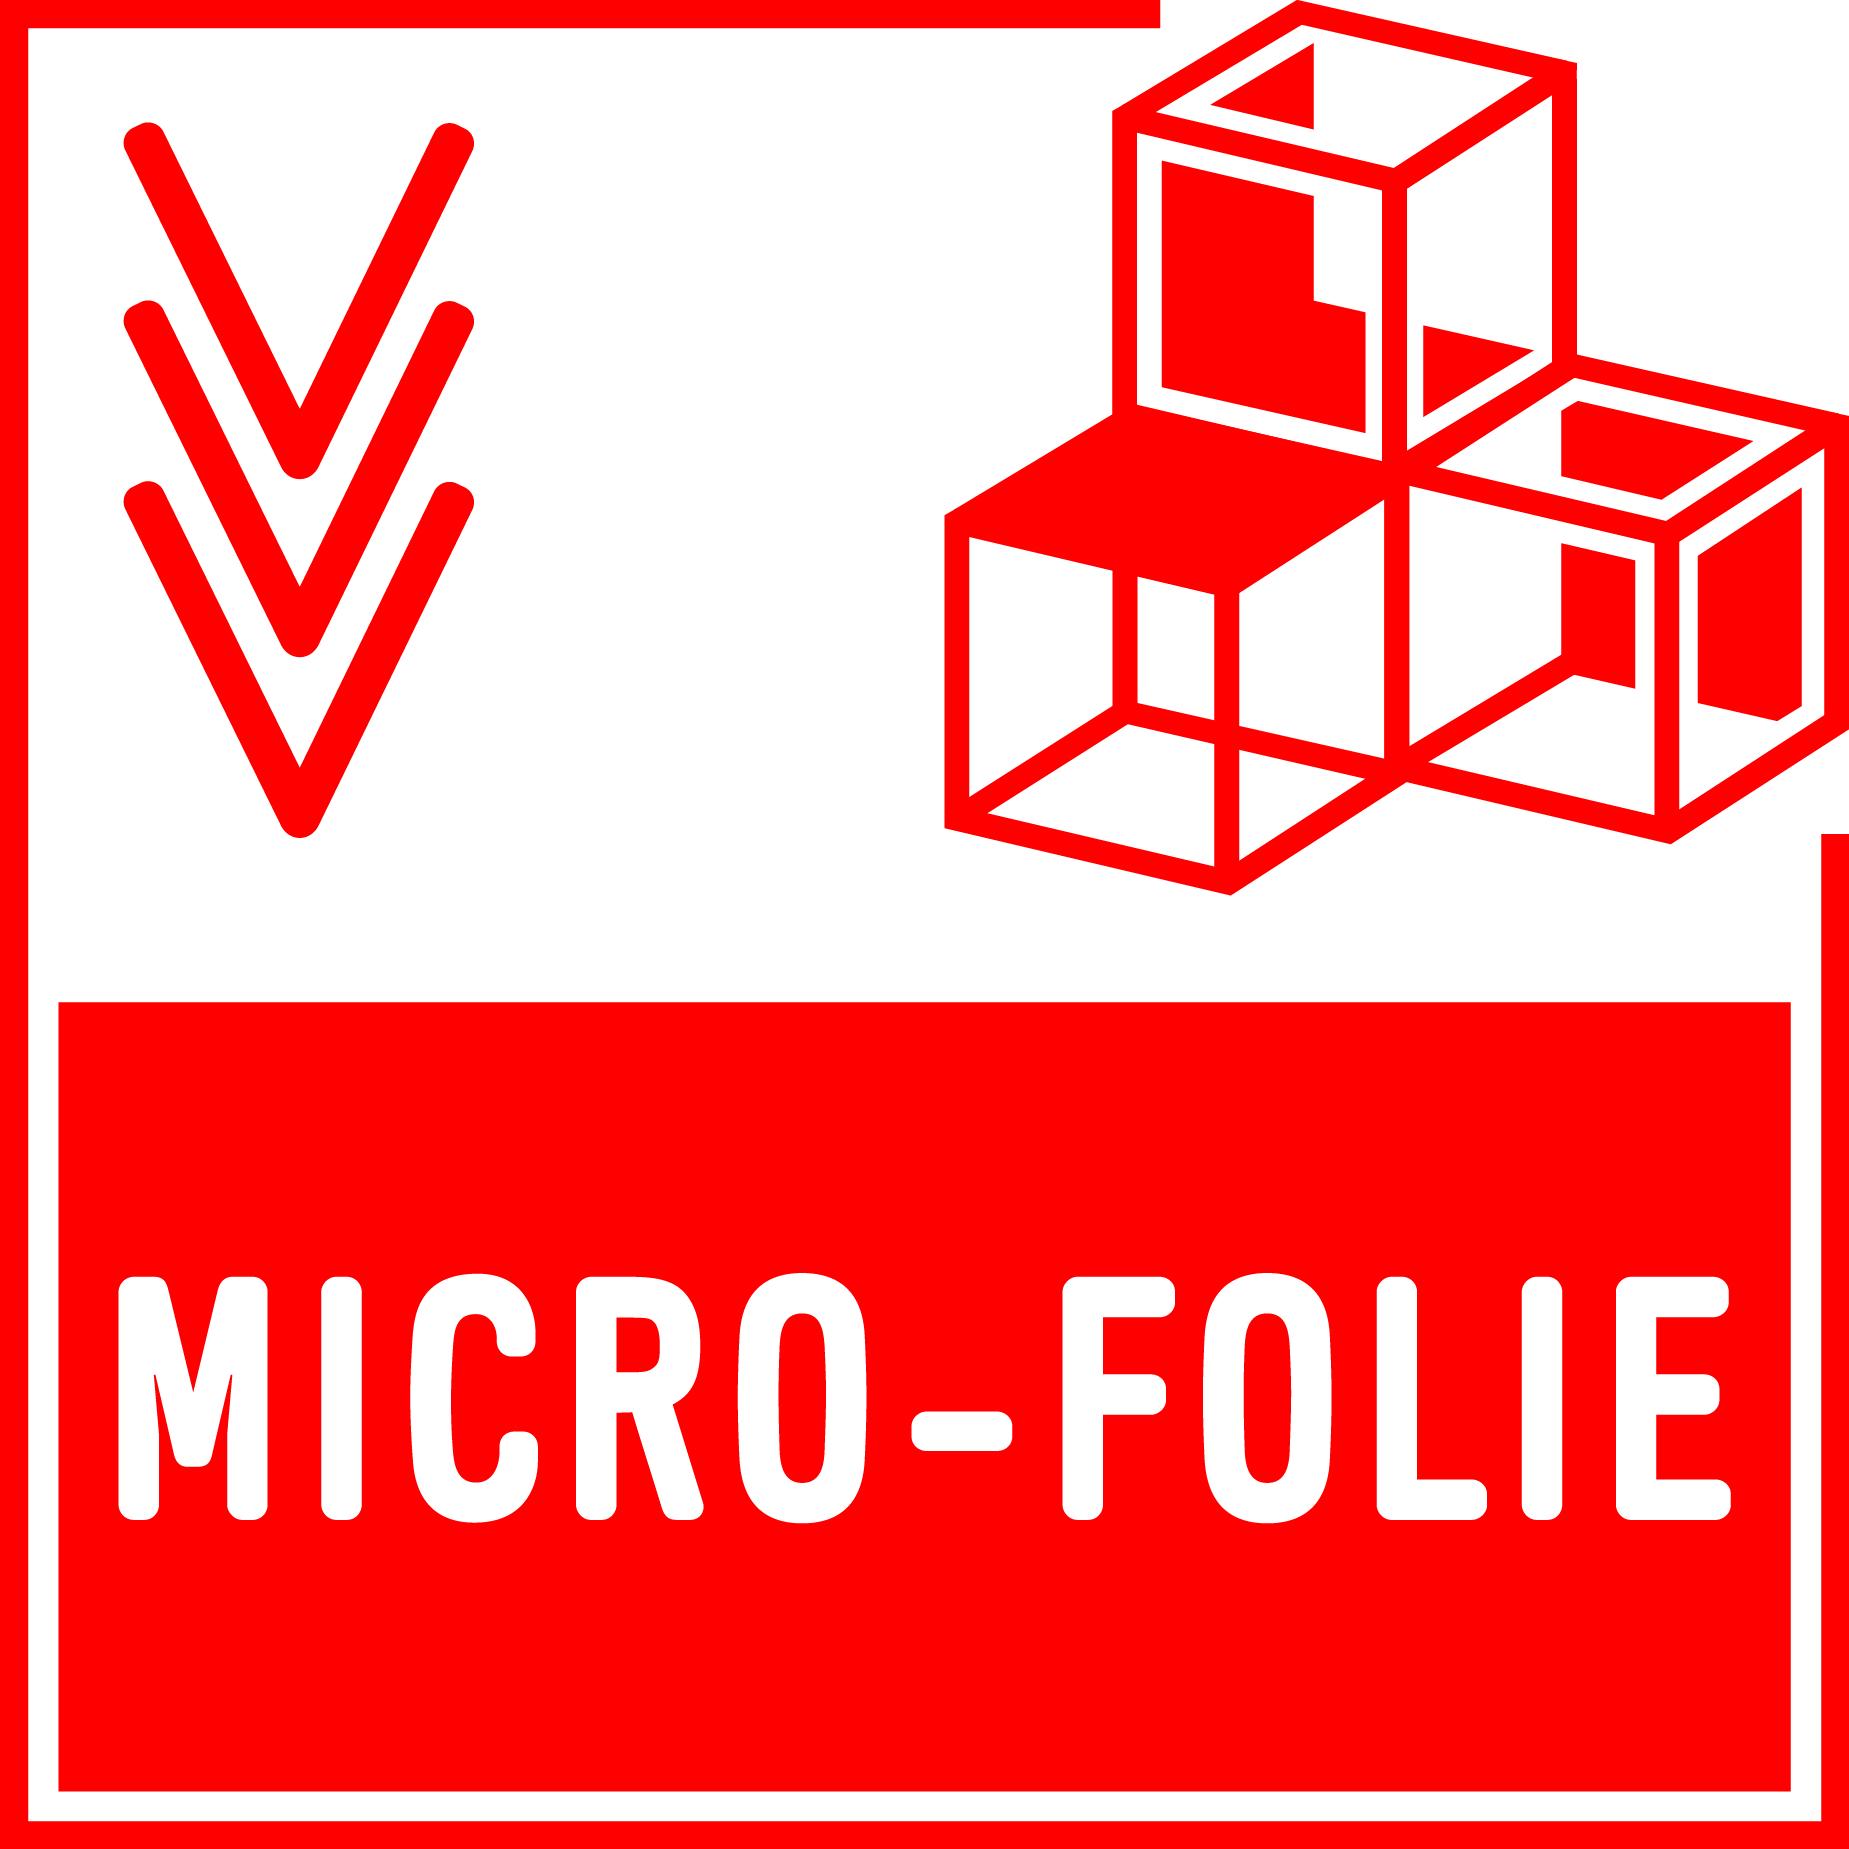 Micro folie logo 1